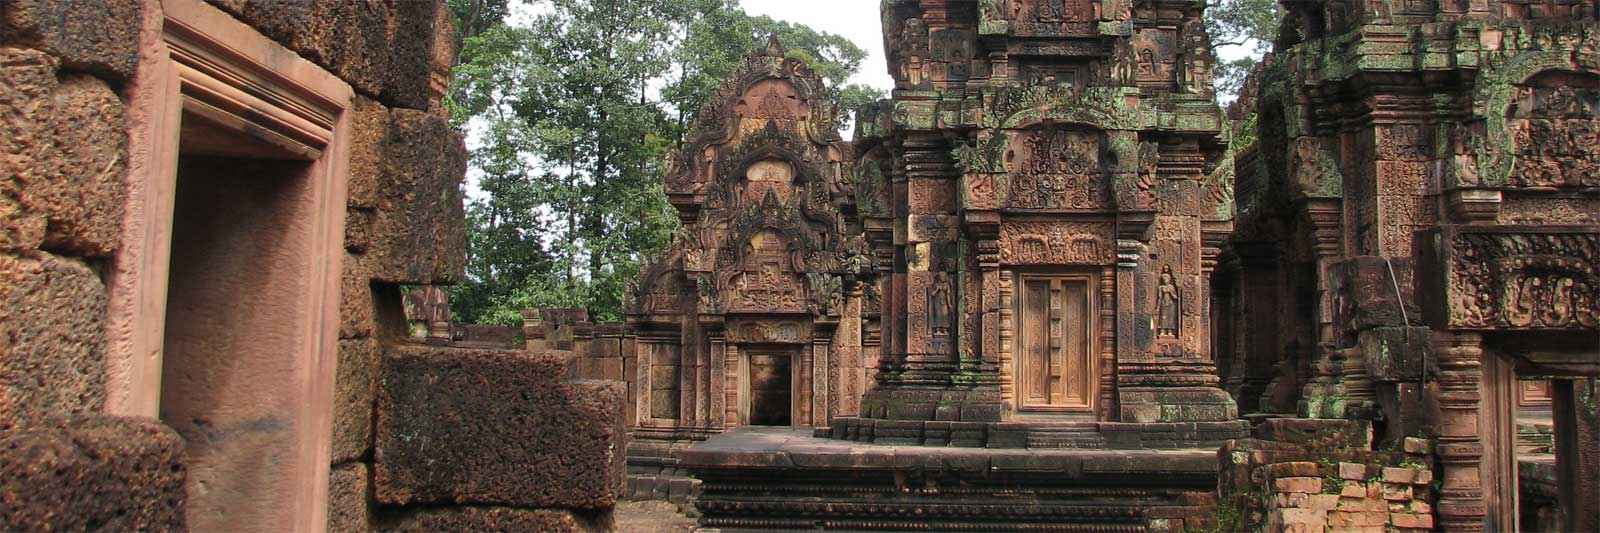 Cambodia ruins